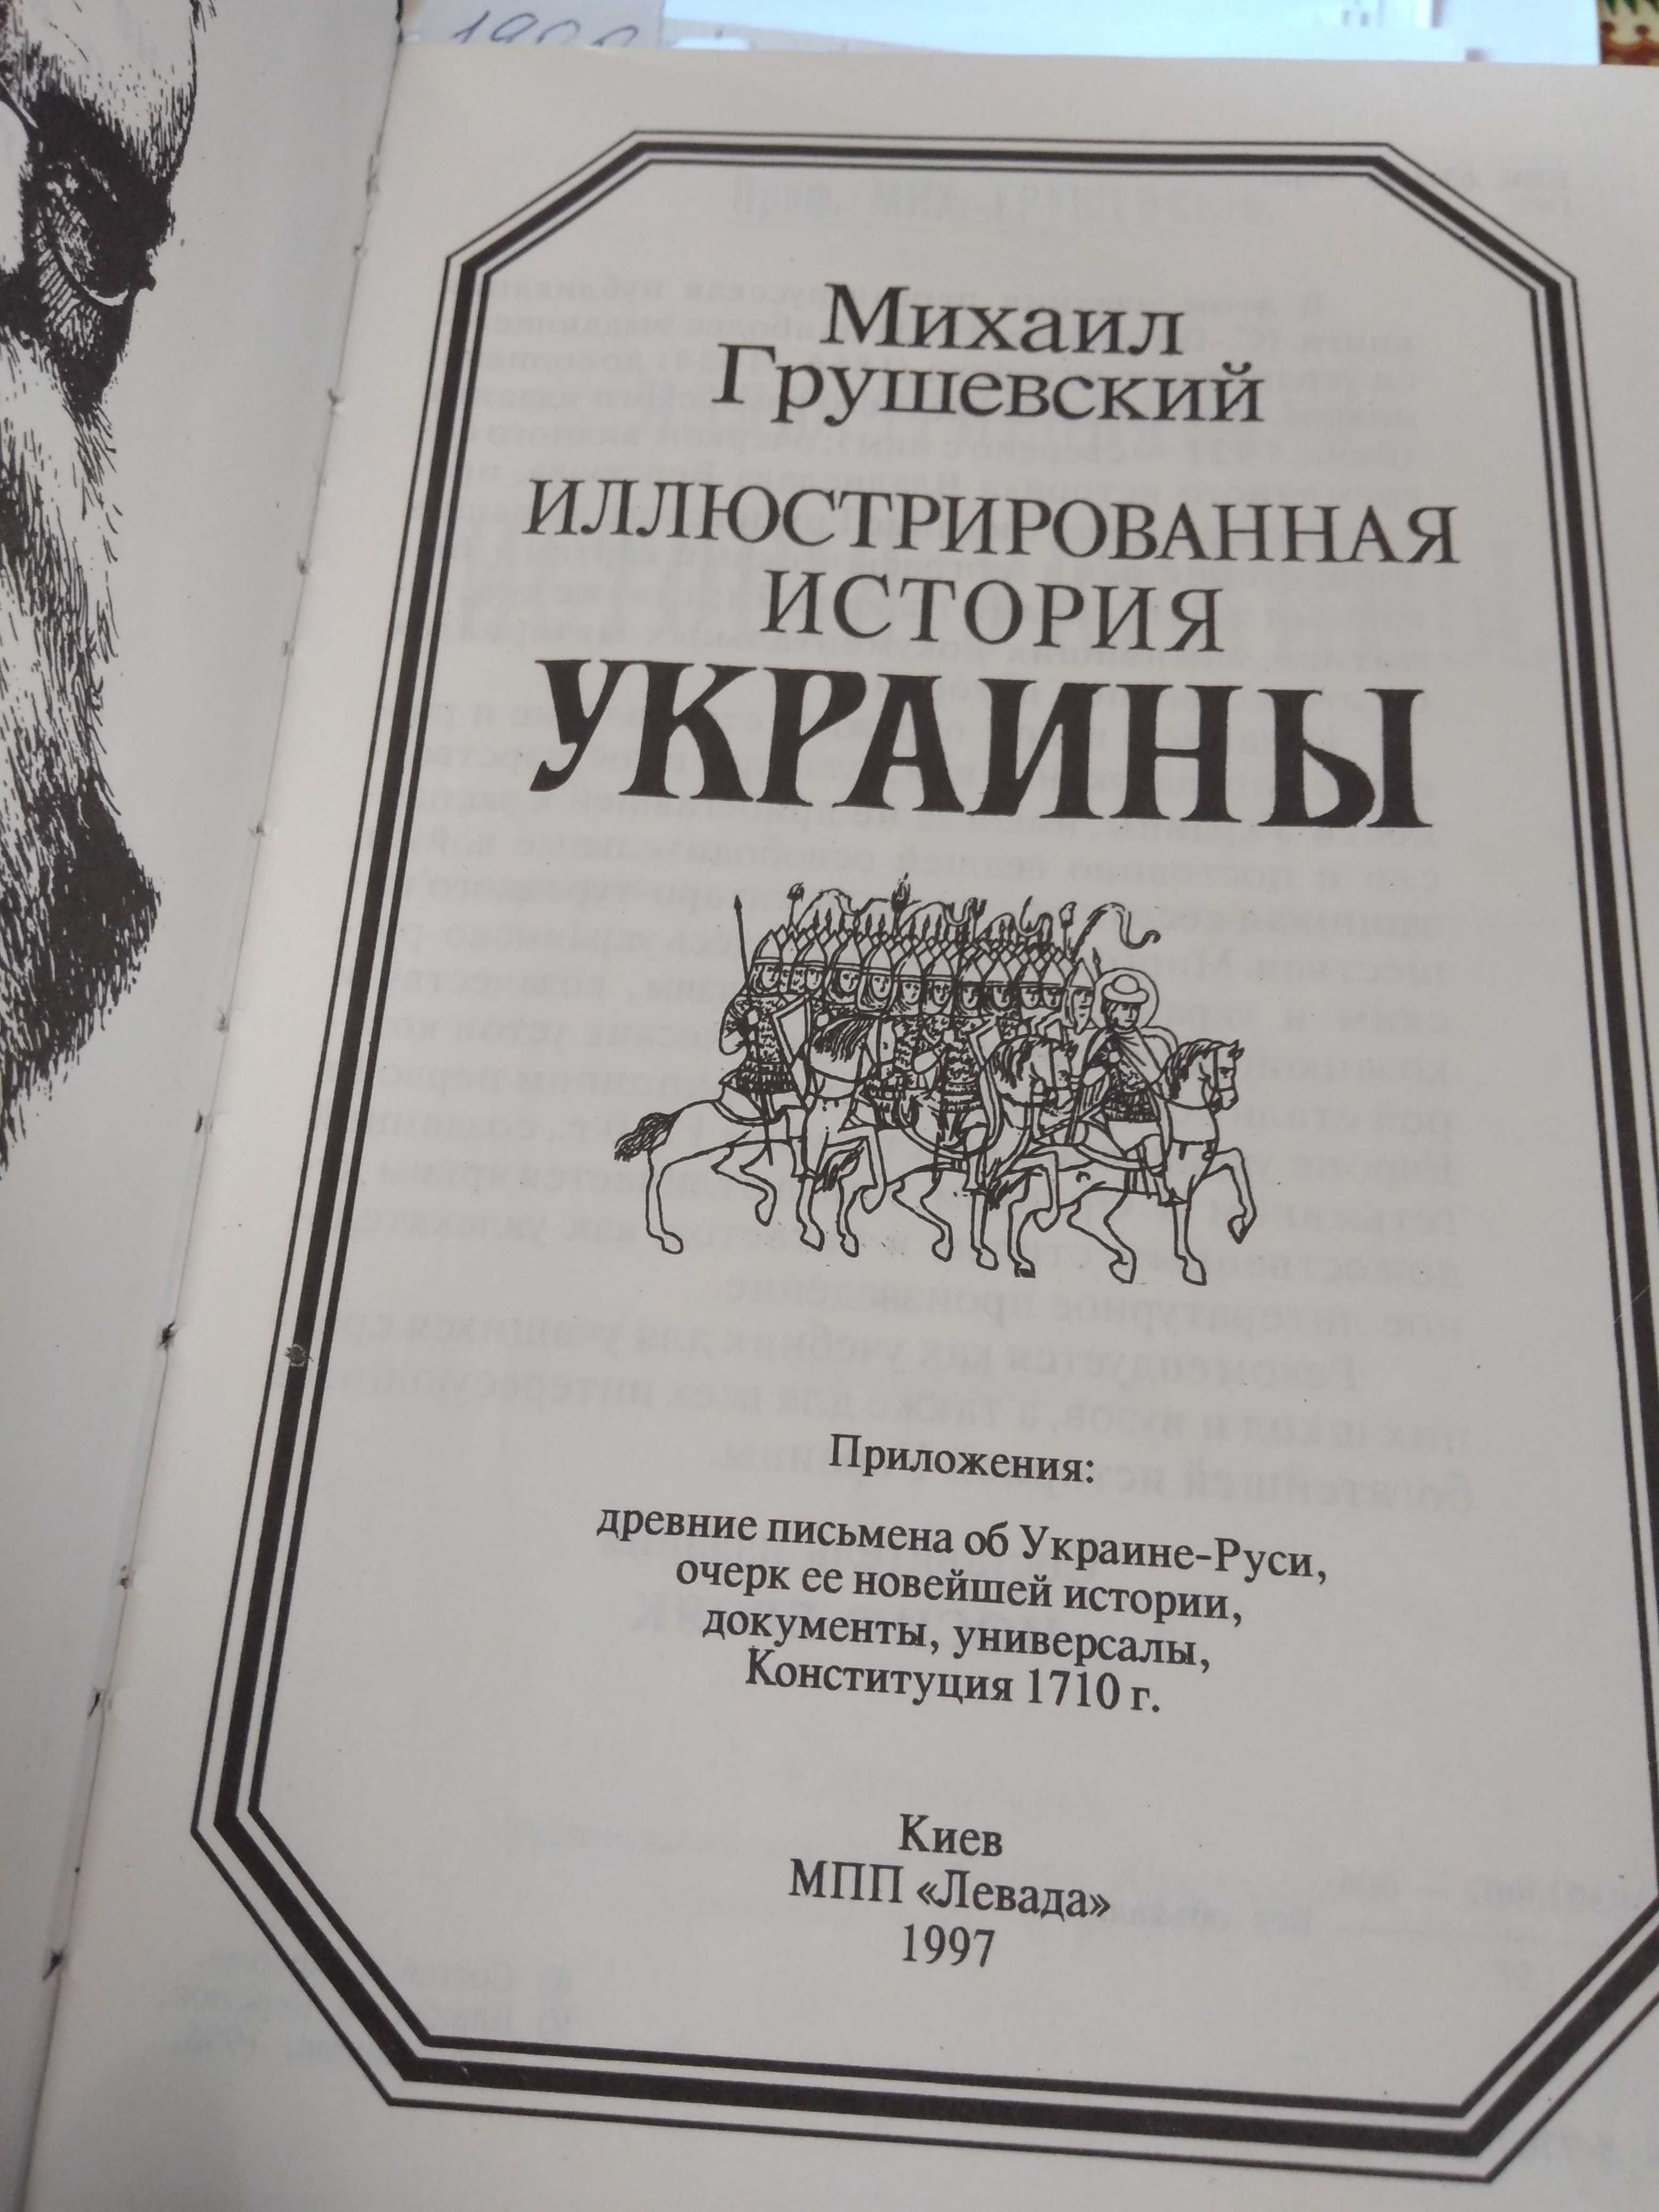 Иллюстрированная история Украины М. Грушевский